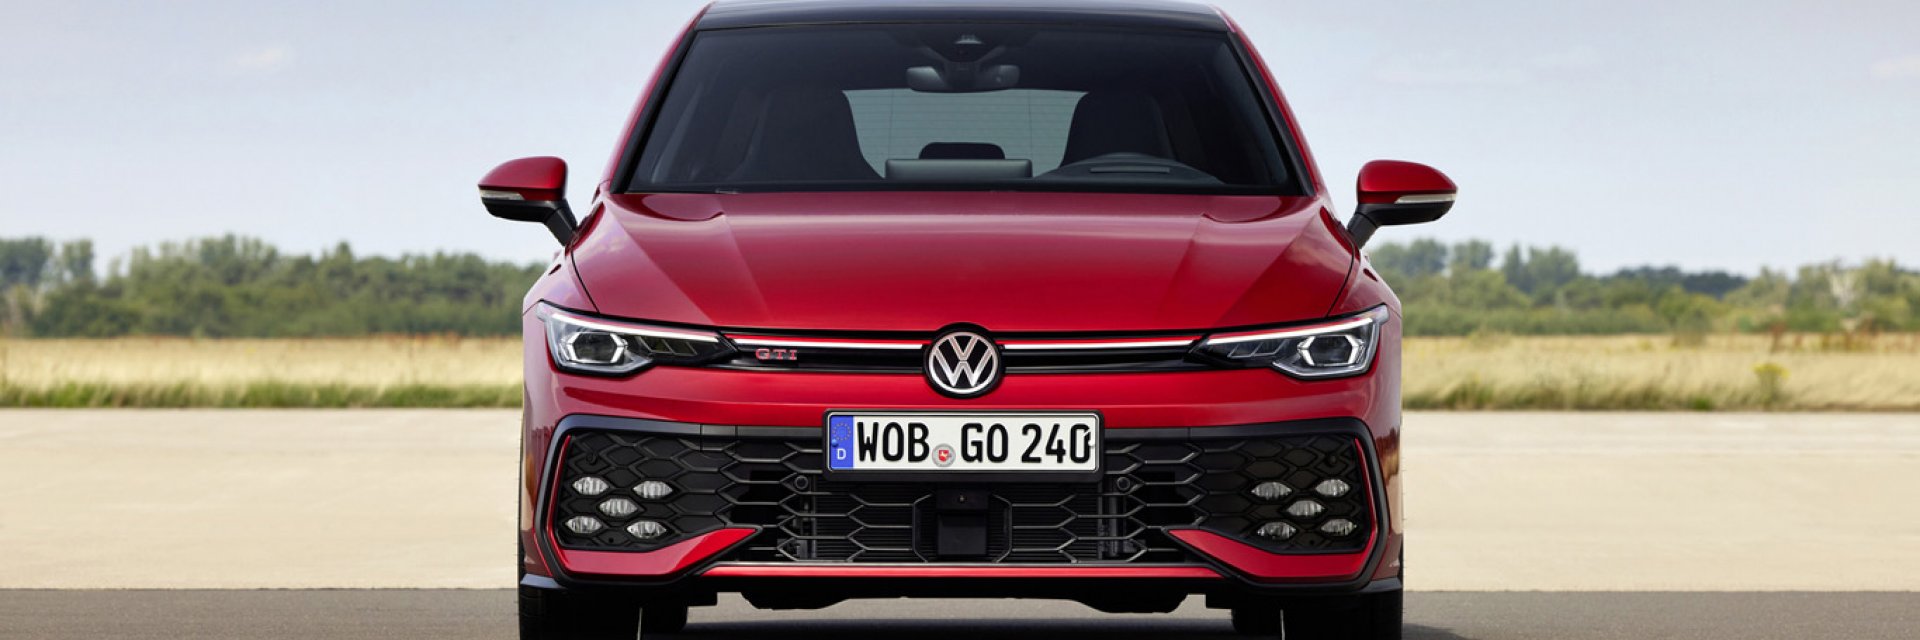 Volkswagen Golf GTI стана още по-мощен, динамичен и технологичен